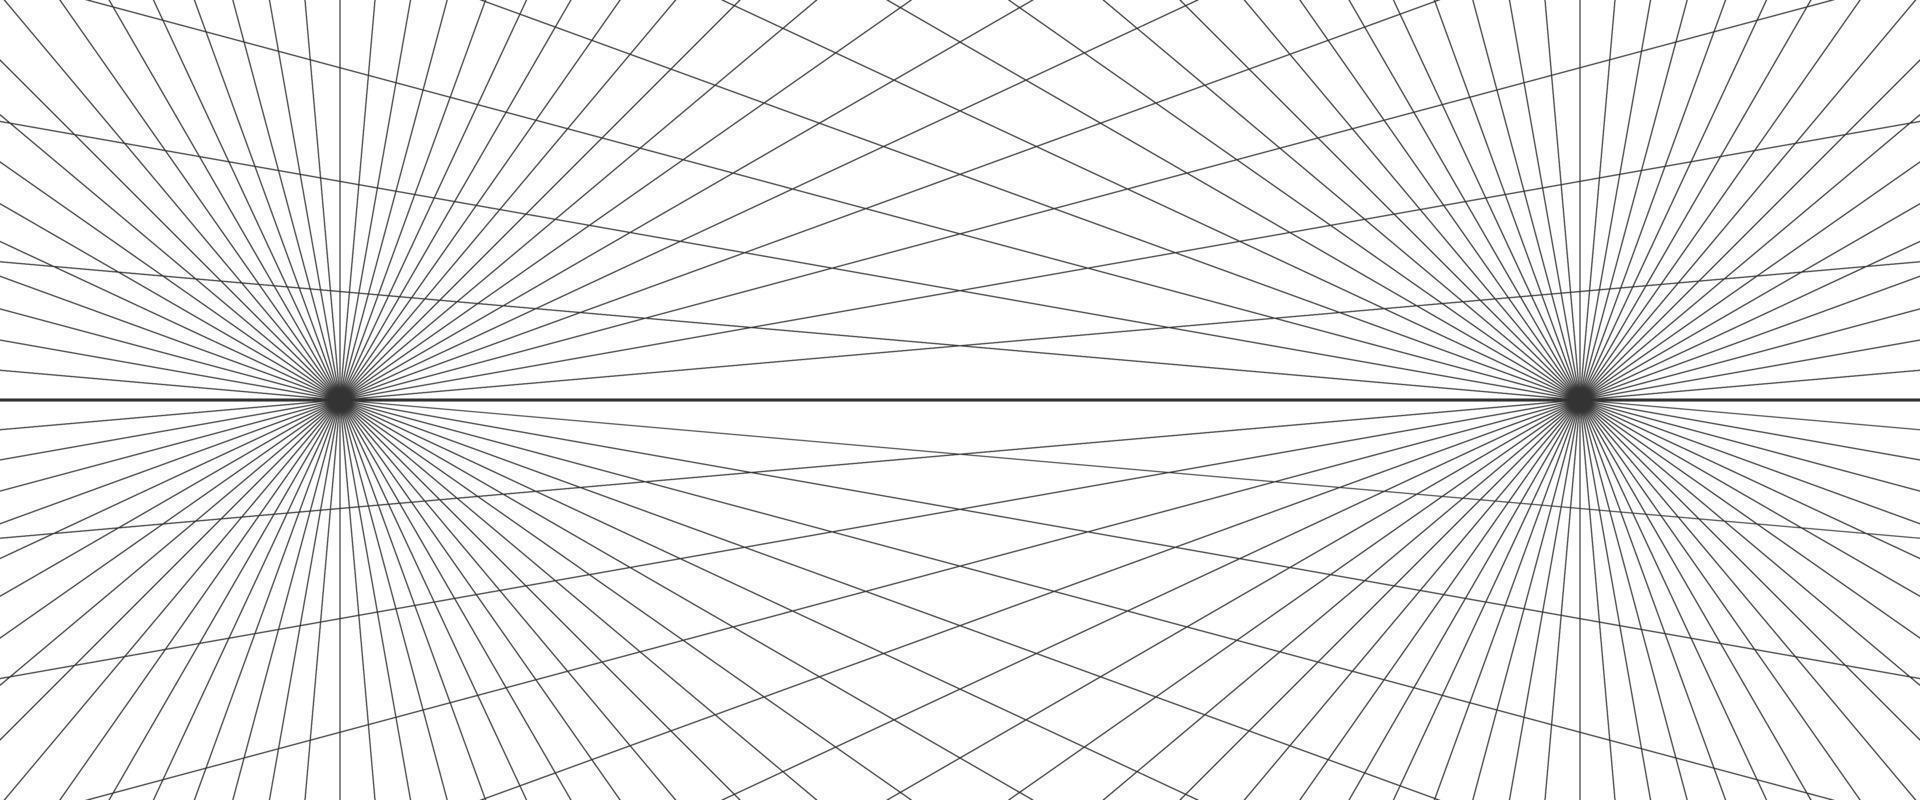 fond de grille de perspective à deux points. toile de fond de ligne de grille abstraite. modèle de maillage de perspective de dessin. illustration vectorielle isolée sur fond blanc vecteur